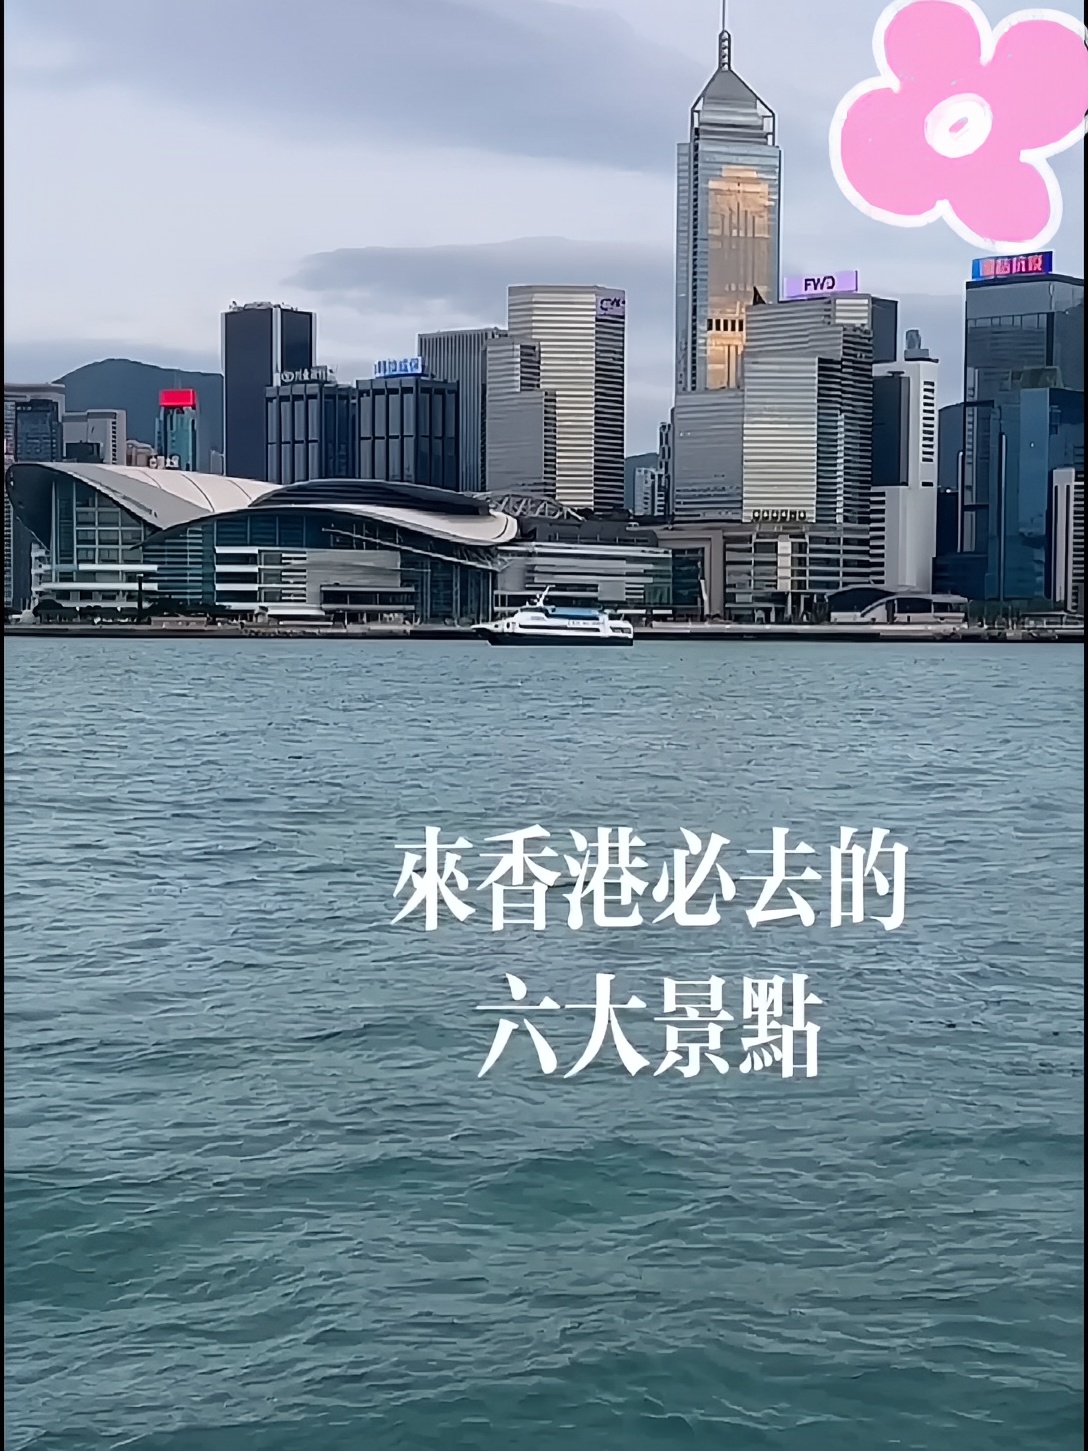 来香港必去的六大景点。#香港 #旅游攻略#图文伙伴计划